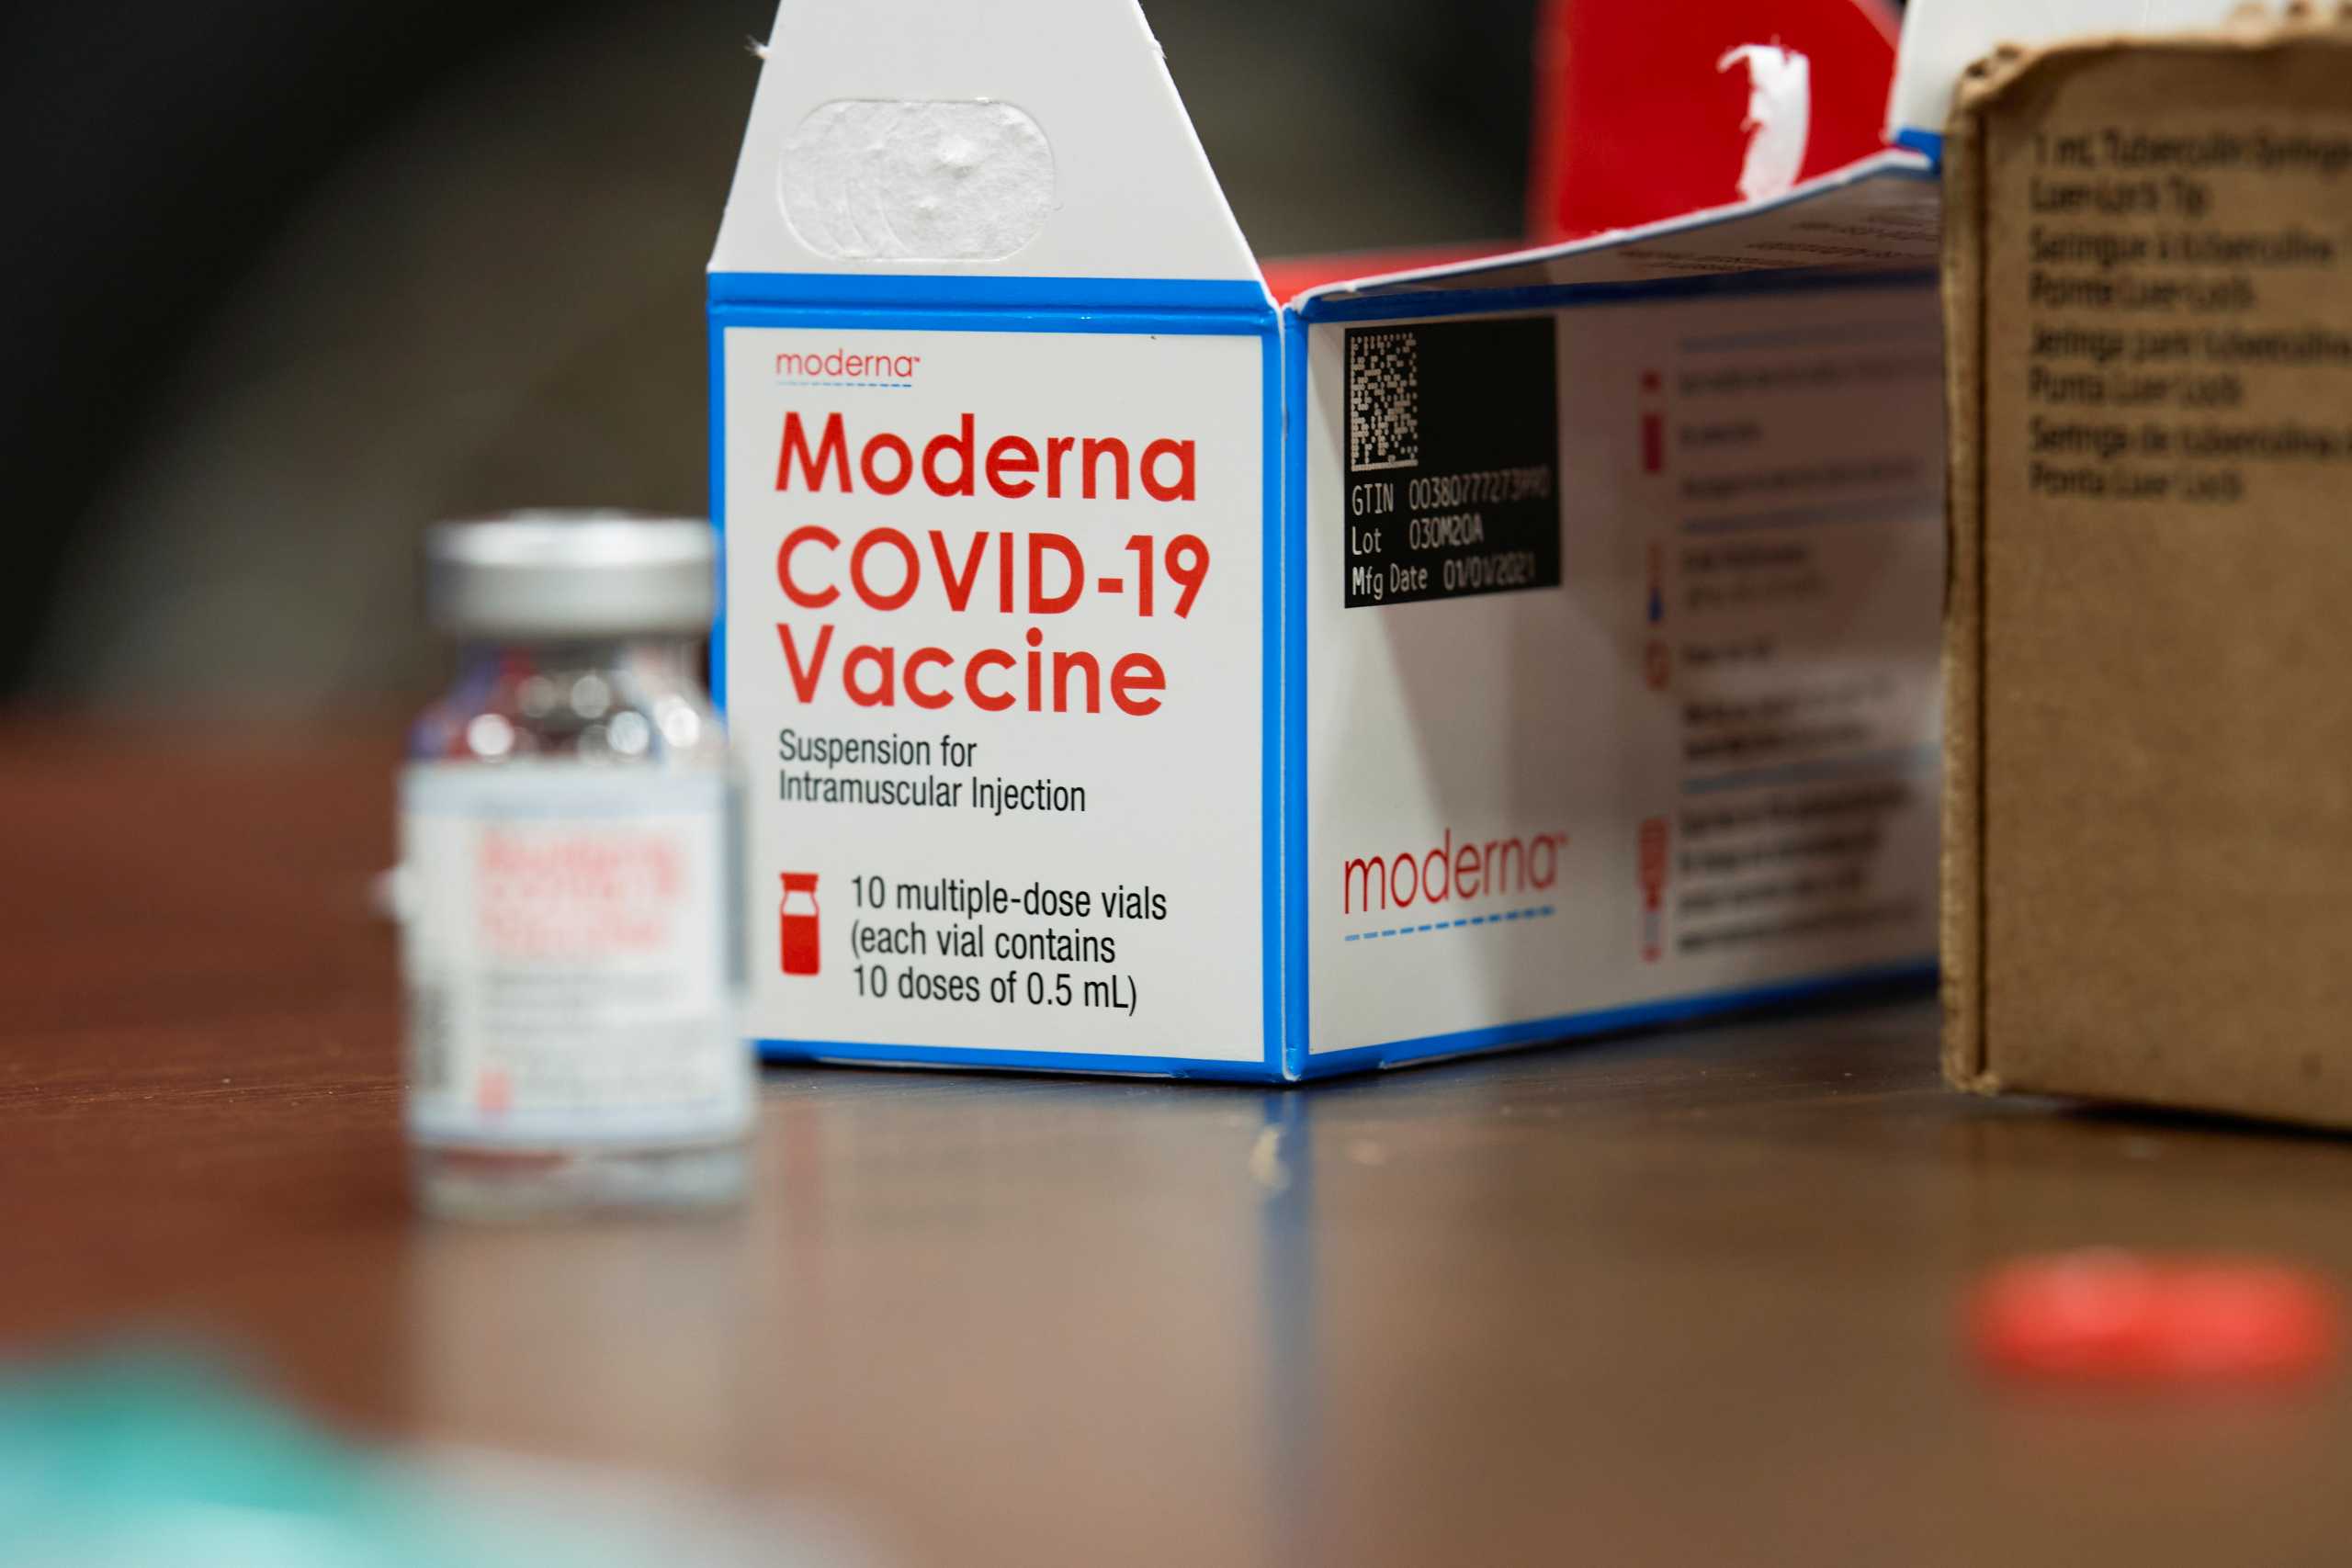 Κορονοϊός: Επενδύσεις της Moderna για αύξηση παραγωγής εμβολίων – Σχέδια για έως 15 δόσεις ανά φιαλίδιο